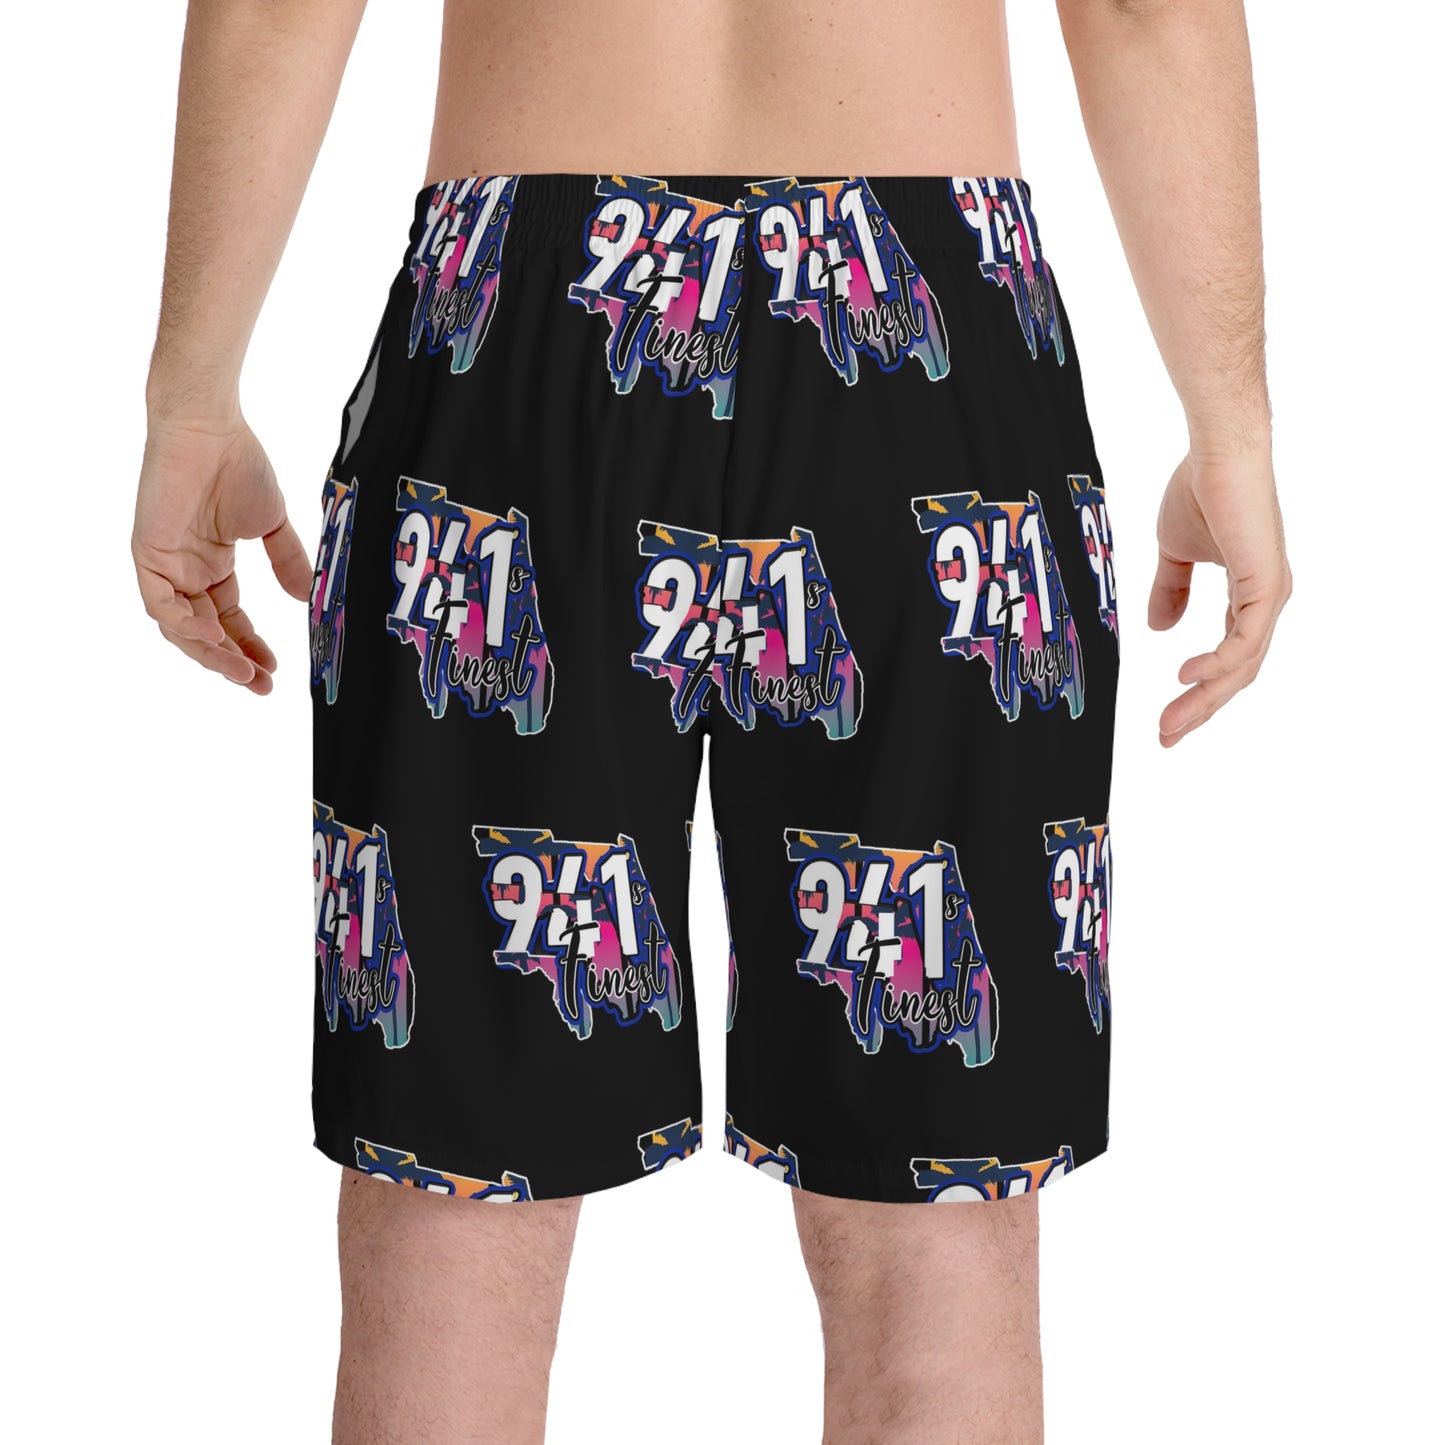 941s finest Men's Elastic Beach Shorts